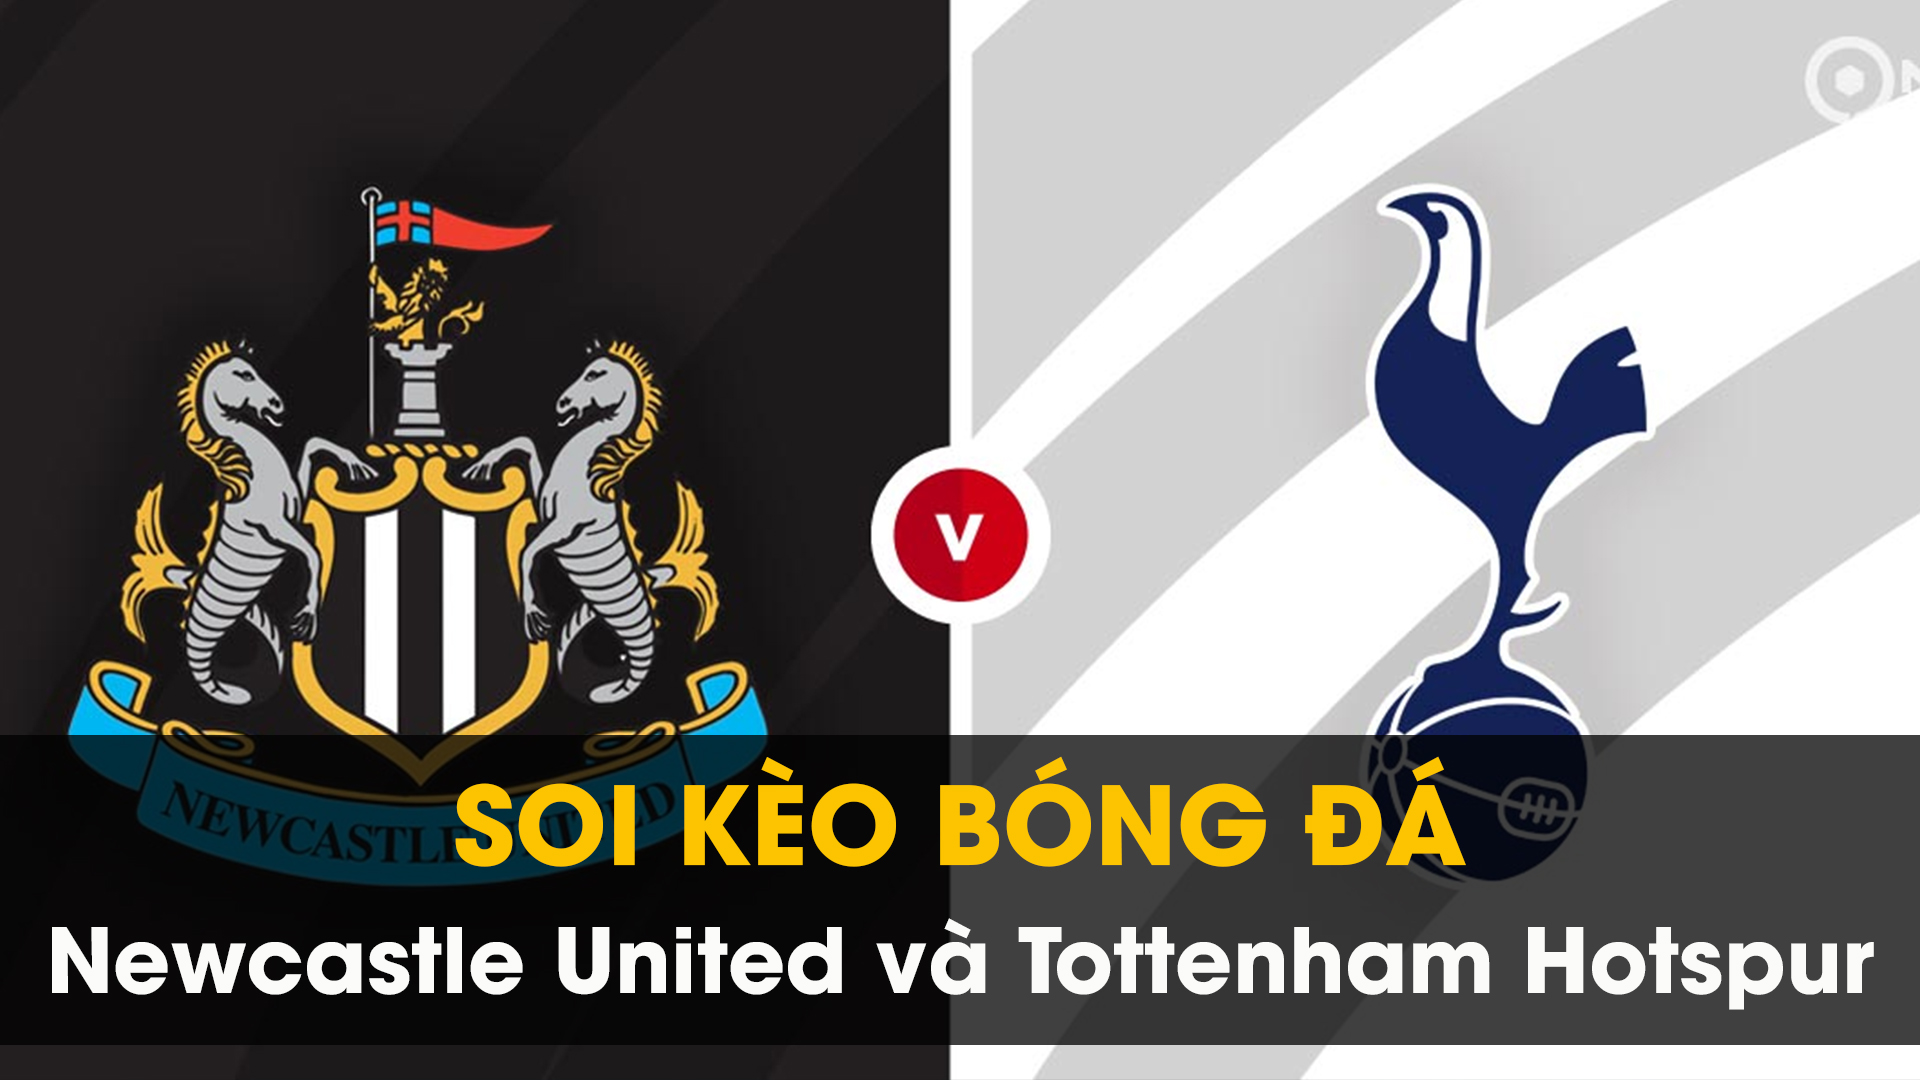 Soi kèo bóng đá giữa Newcastle United và Tottenham Hotspur 01